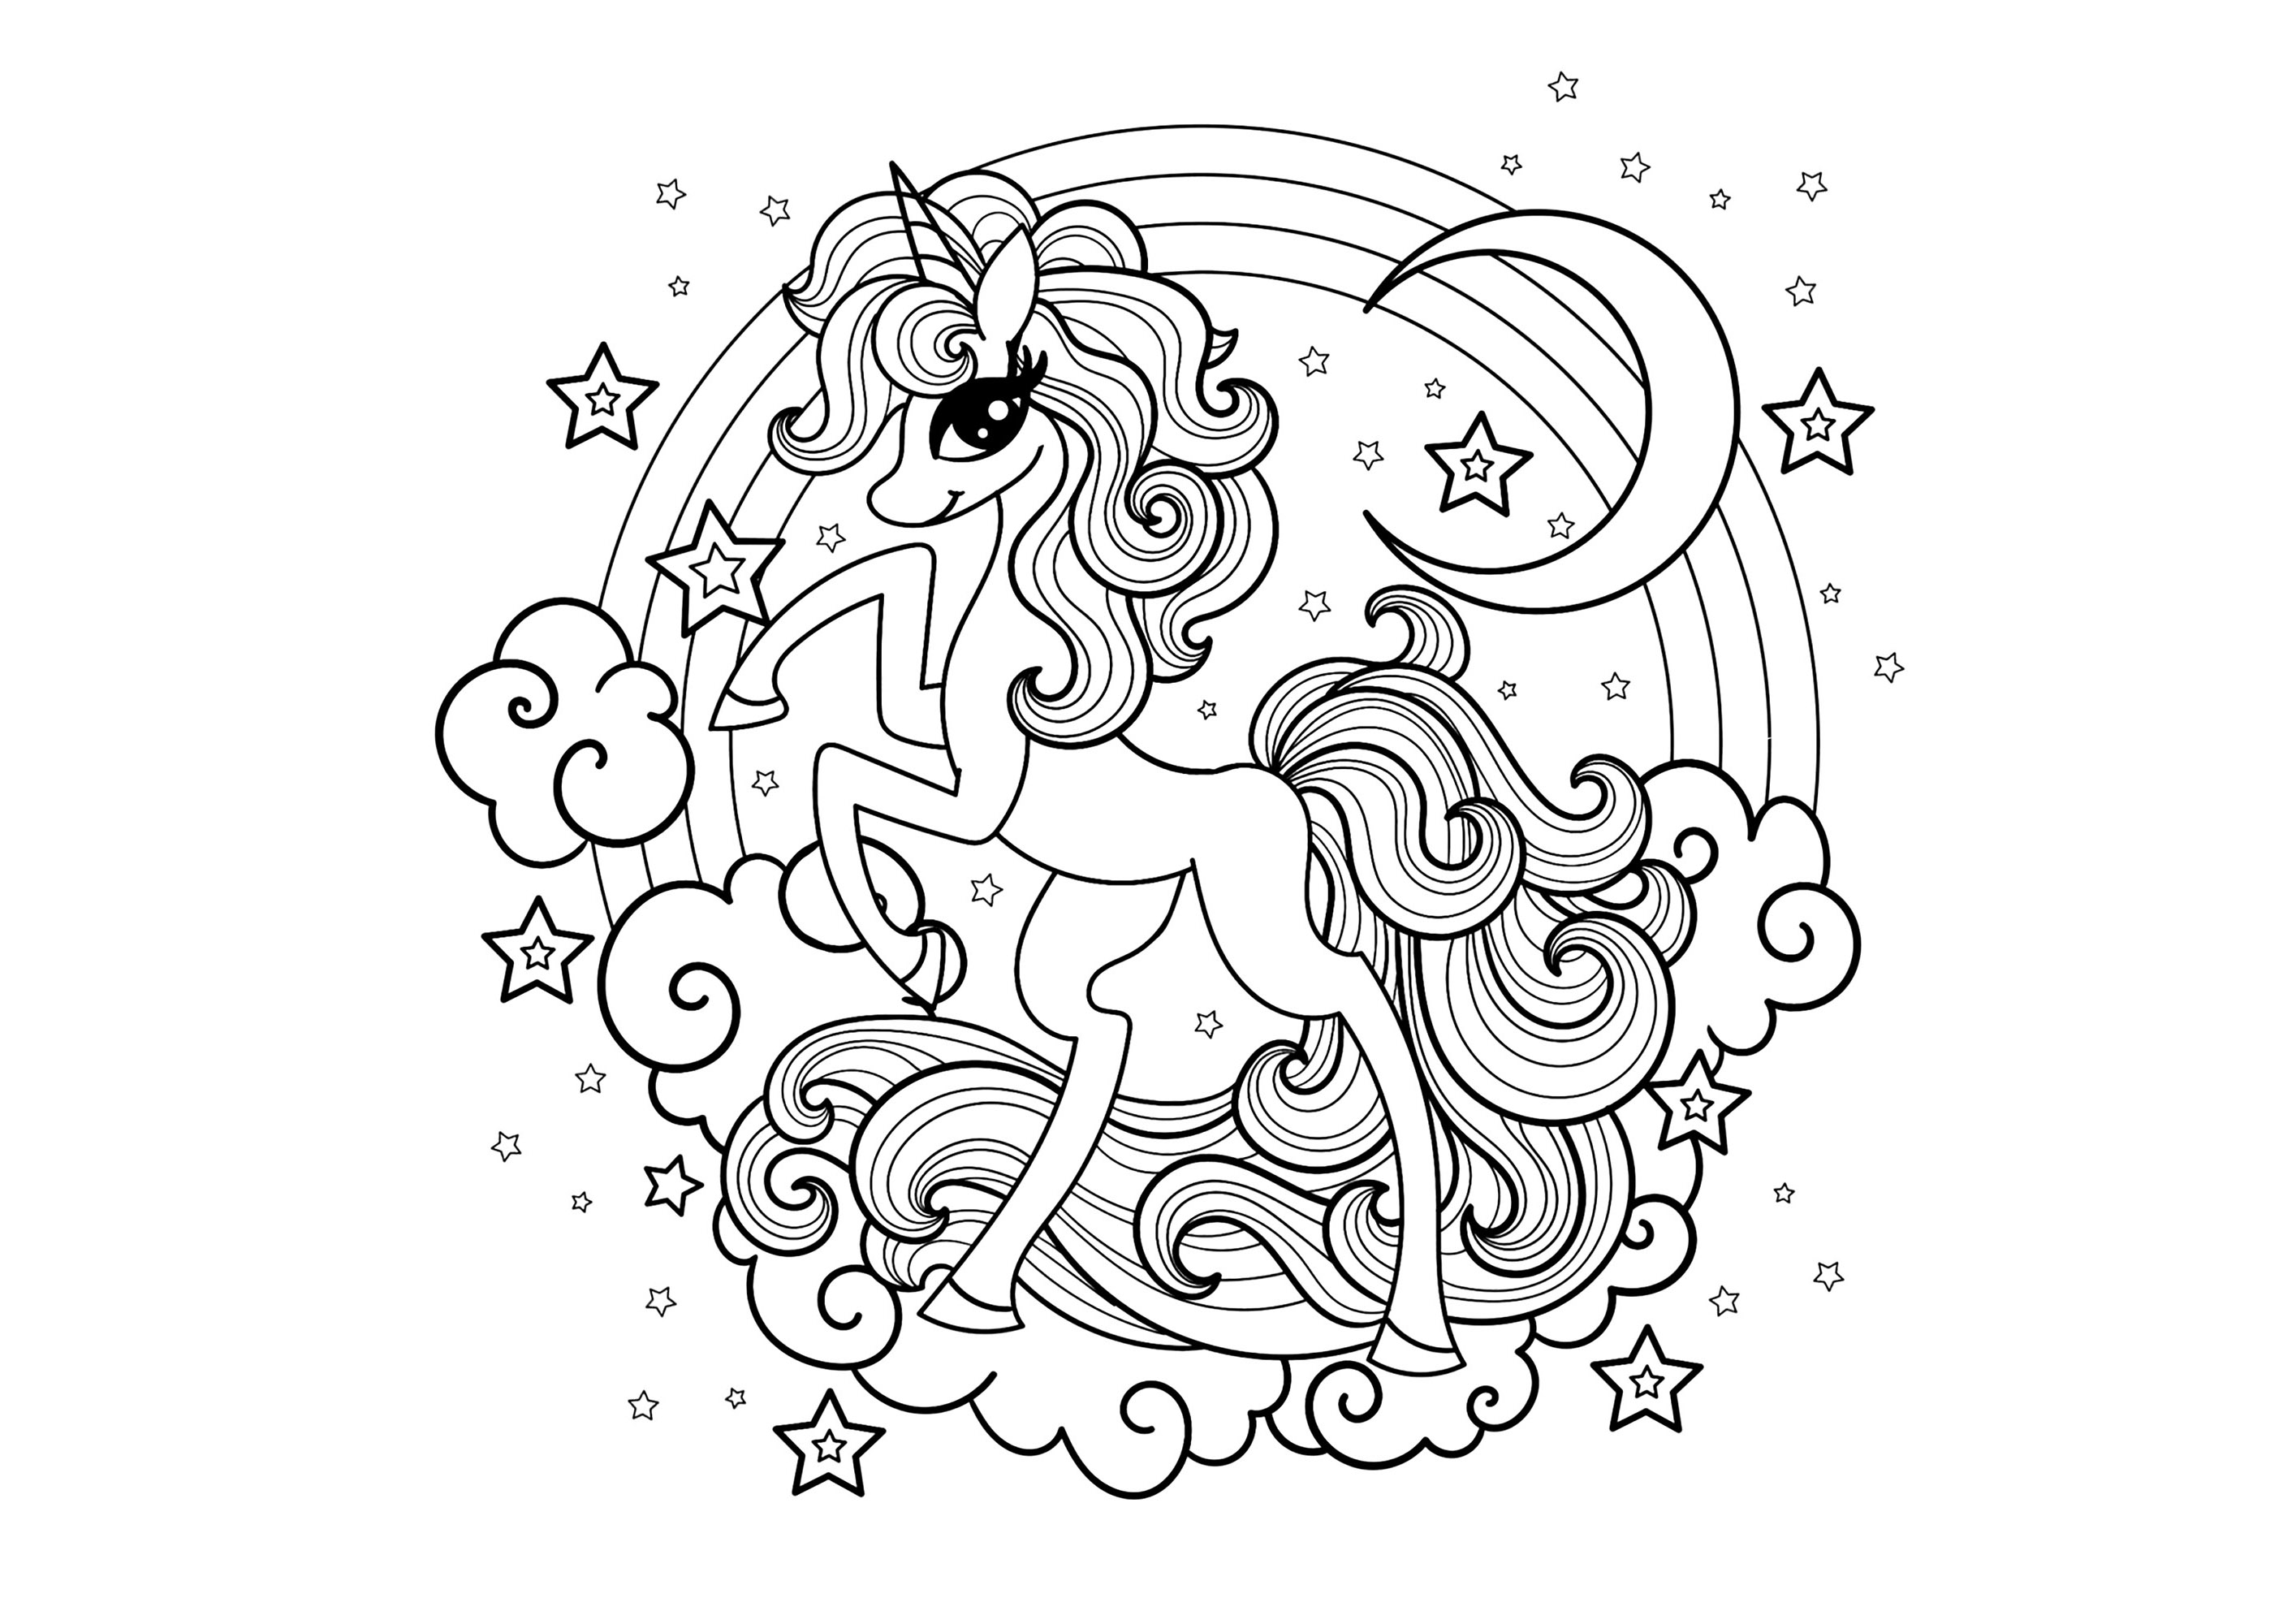 Ein Einhorn mit einem unverwechselbaren Stil. Hübsches Einhorn mit Regenbogen, Mond, Wolken und Sternen, Künstler : Zerlina1973   Quelle : 123rf